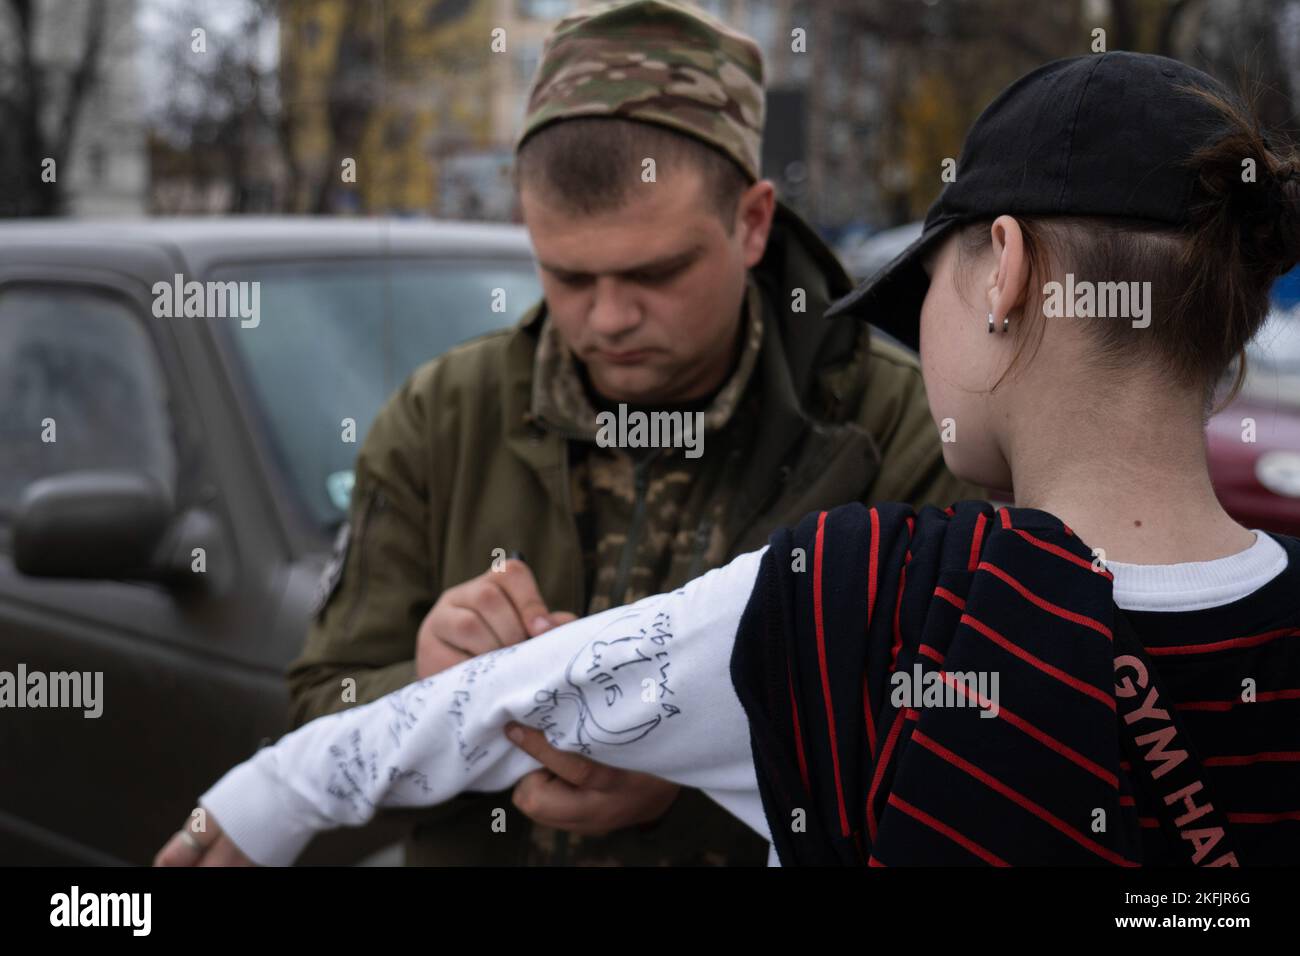 Kherson, Ukraine. 16th novembre 2022. On voit un soldat signer la manche d'un résident de Kherson. Les habitants de Kherson sont encore très heureux de la libération de la ville, mettant fin à plus de 8 mois d'occupation. Cependant, la capitale régionale du sud n'a toujours pas d'électricité, d'eau et un minimum de signal et d'approvisionnement alimentaire. Crédit : SOPA Images Limited/Alamy Live News Banque D'Images